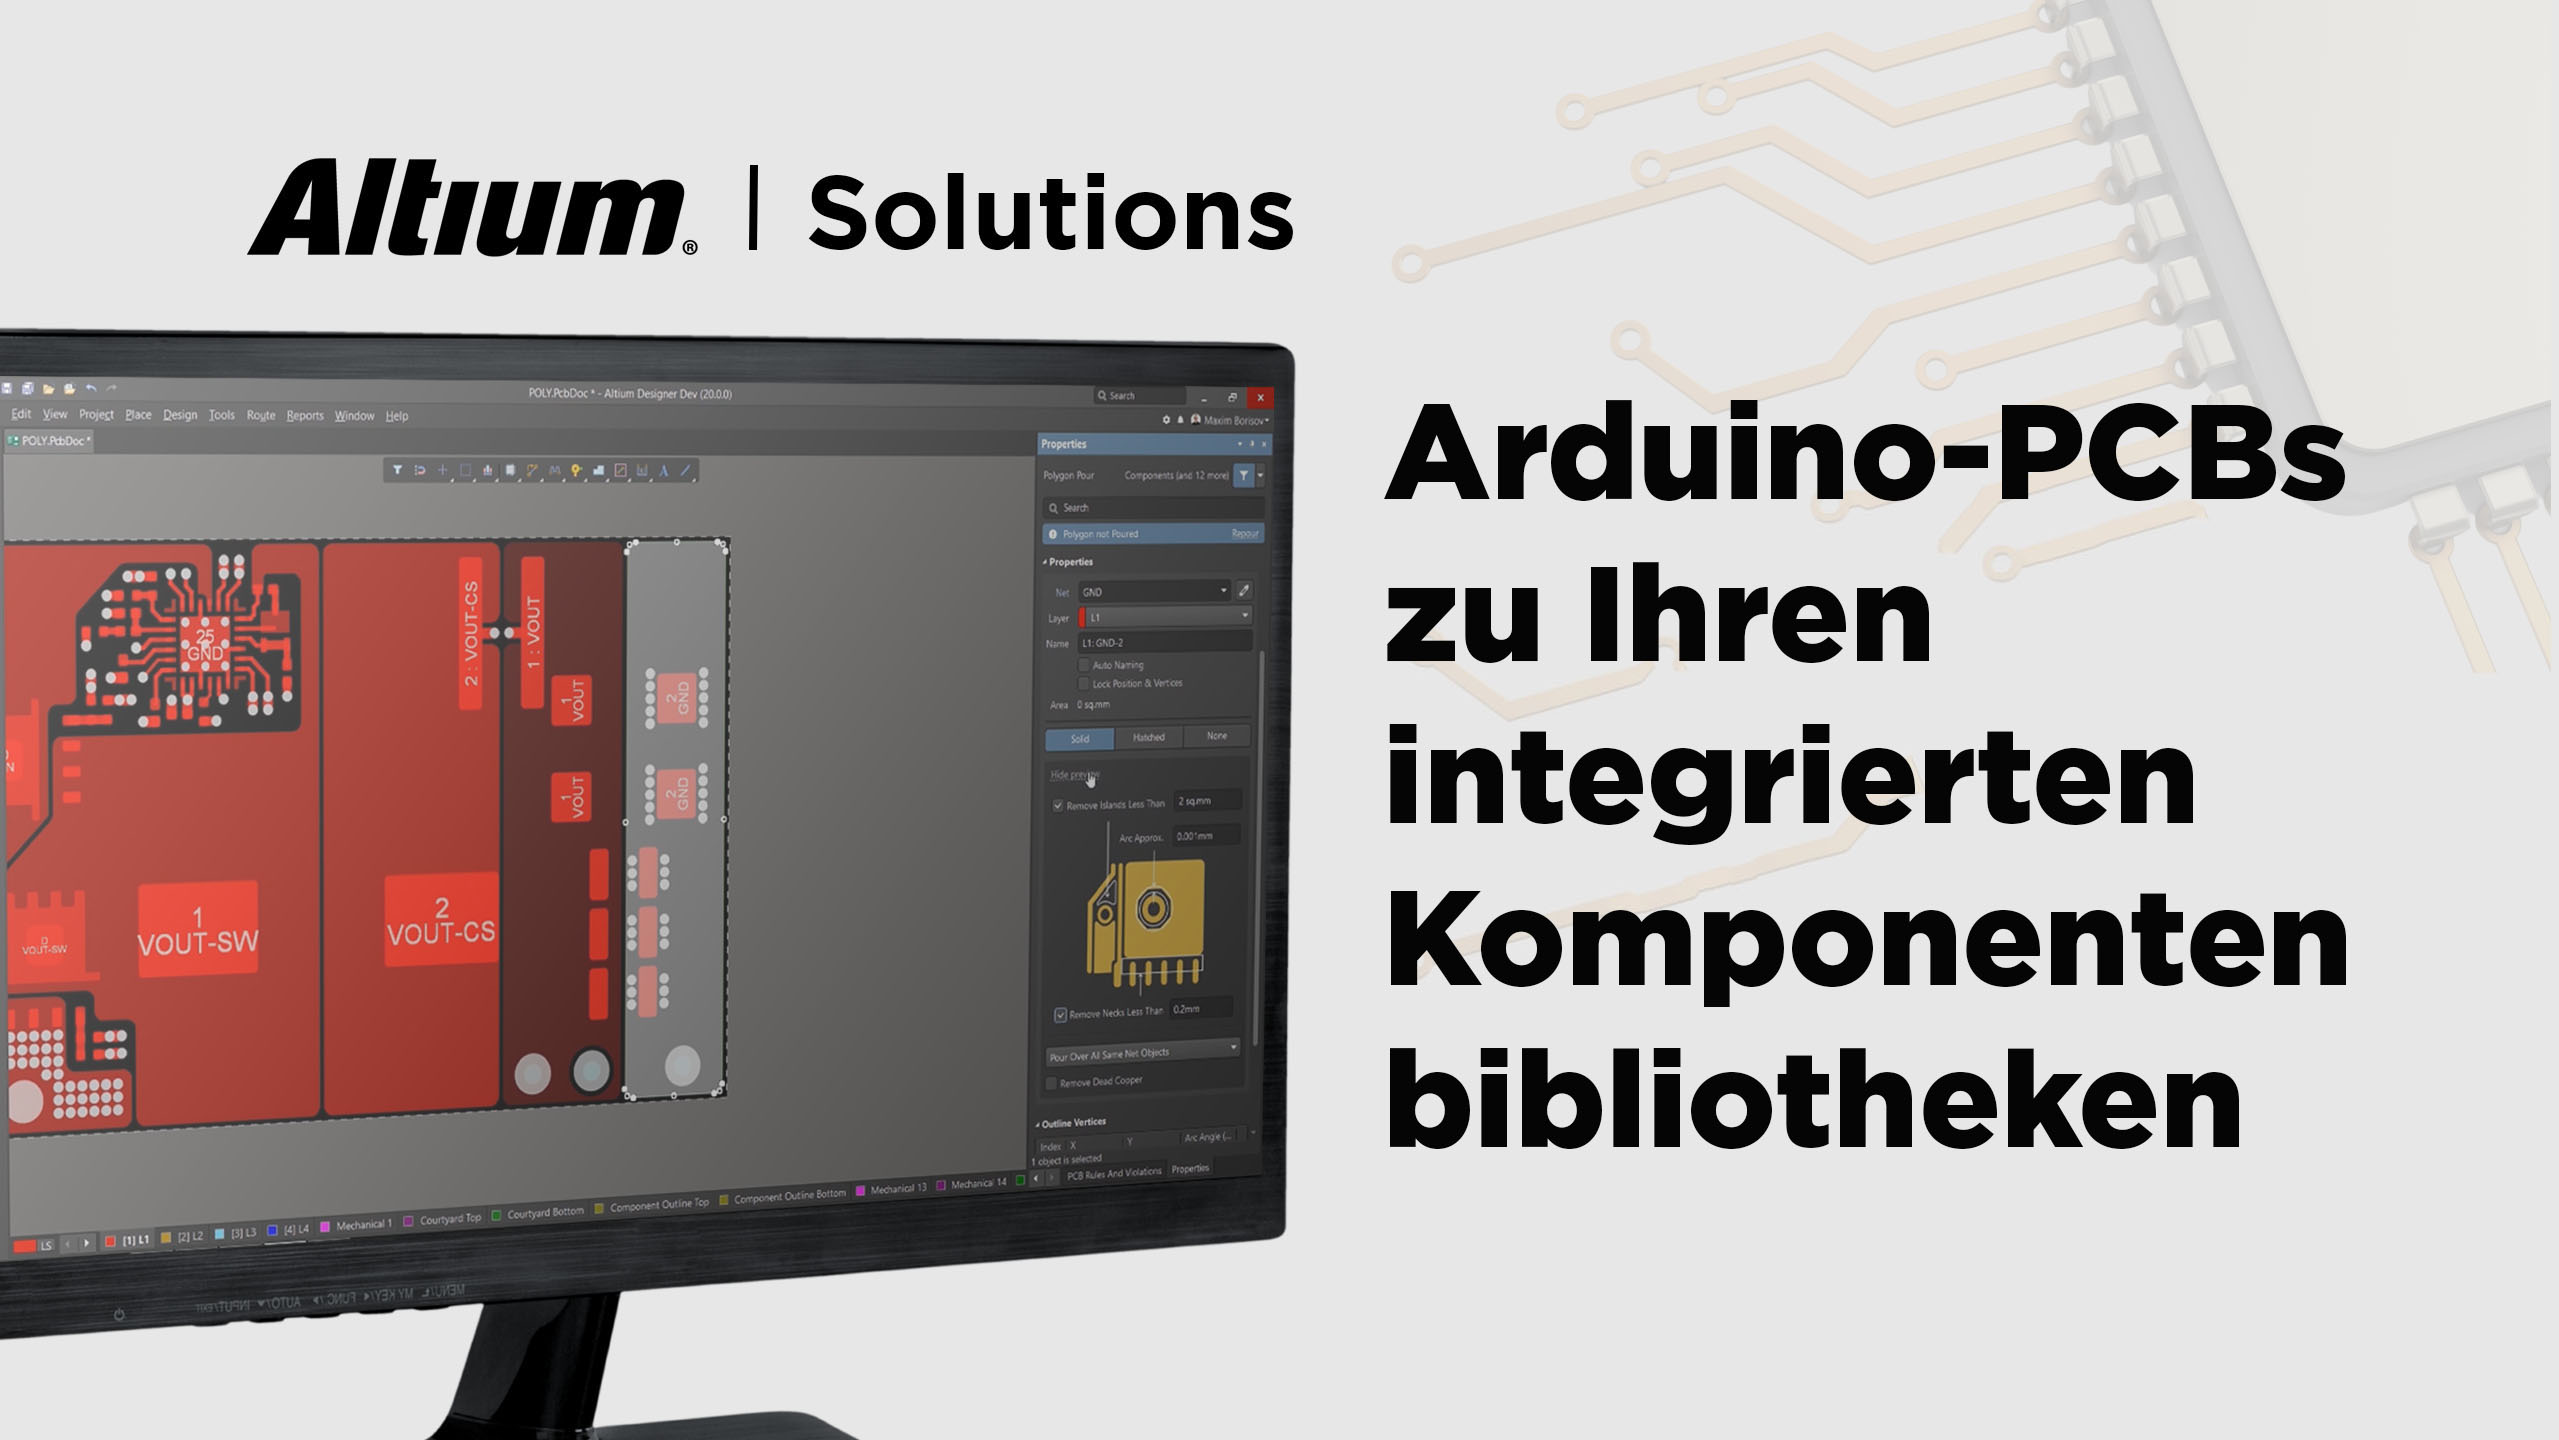 Arduino-PCBs zu Ihren integrierten Komponentenbibliotheken hinzufügen